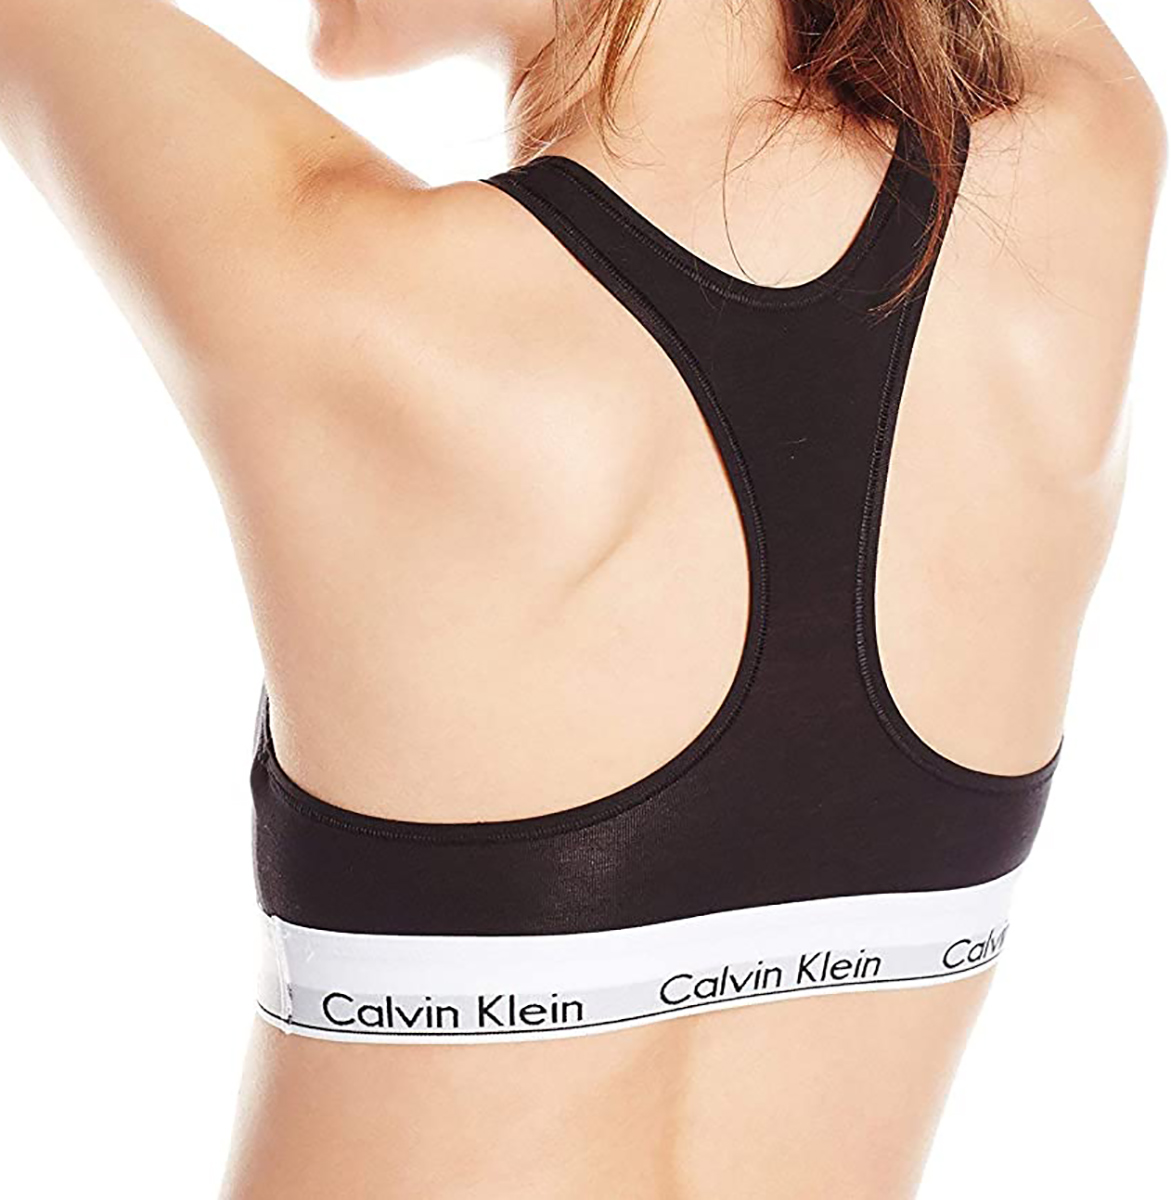 【楽天市場】カルバンクライン レディース 下着 ブラ Calvin Klein モダン コットン インナー 4カラー ブラック ホワイト